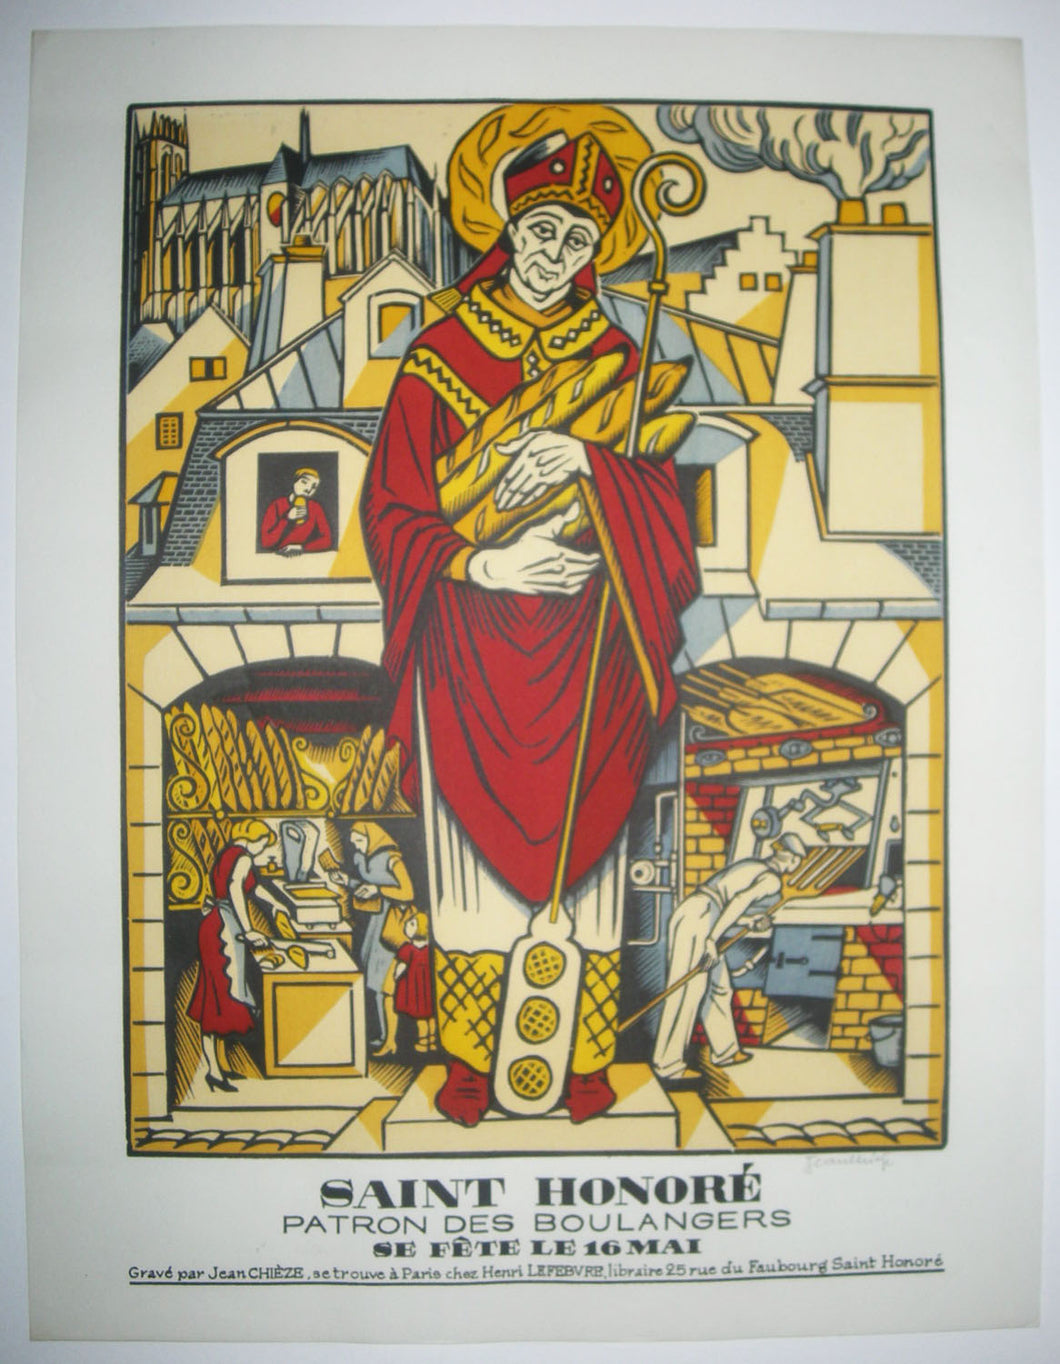 Saint Honoré, Patron des Boulangers, se fête le 16 mai. 